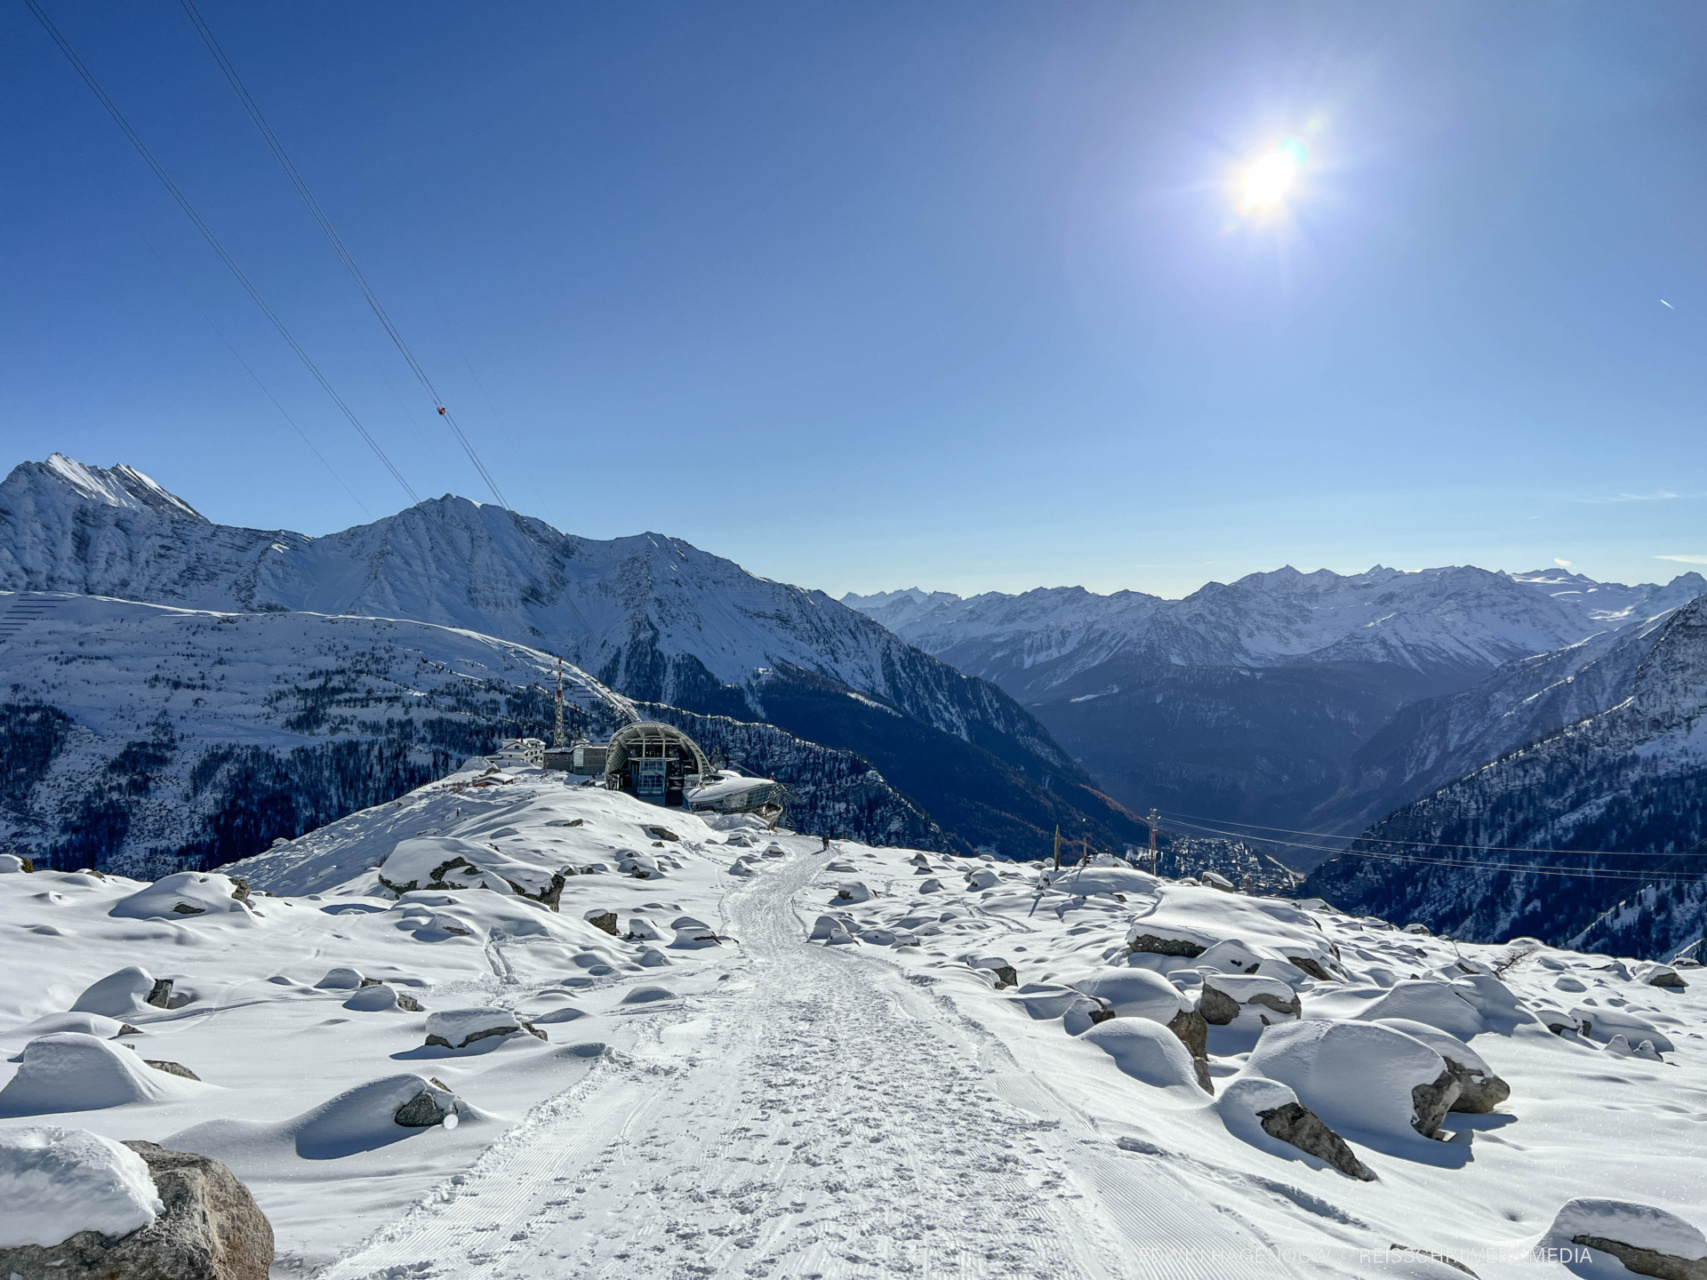 Alpen-indeling en staugebieden | Wanneer valt er sneeuw in mijn skigebied?